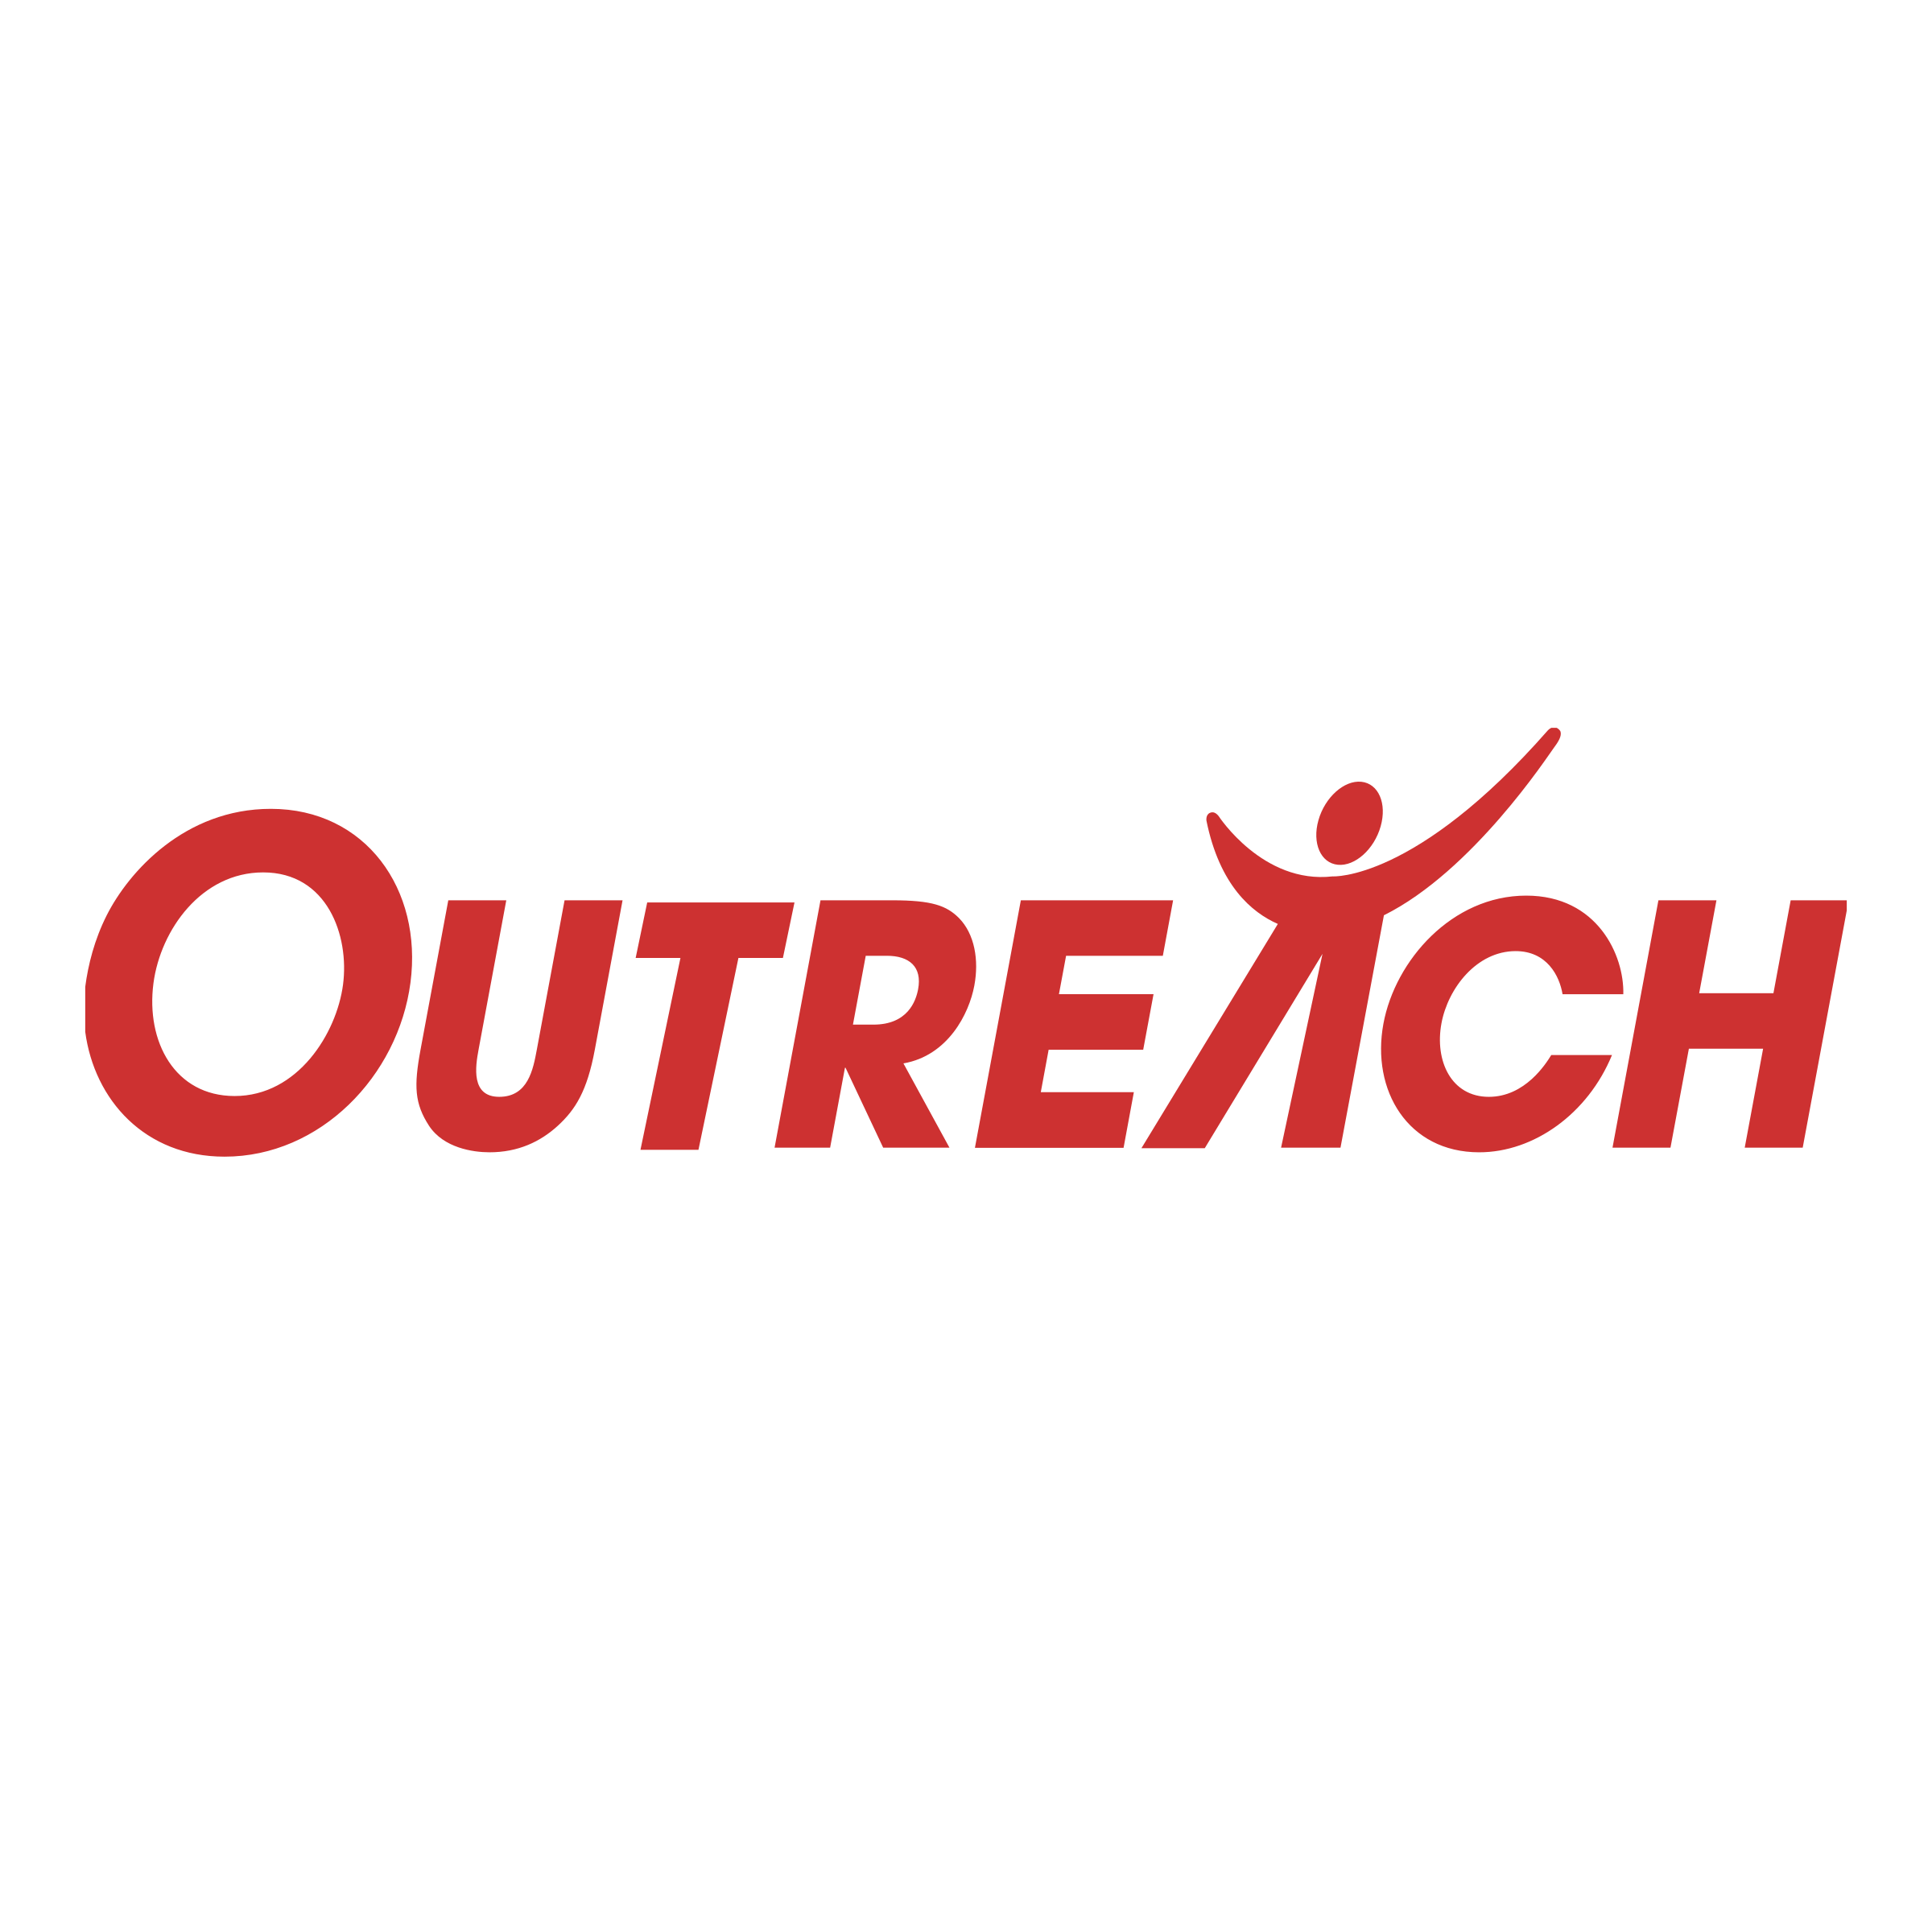 Outreach Logo - Outreach Logo PNG Transparent & SVG Vector - Freebie Supply